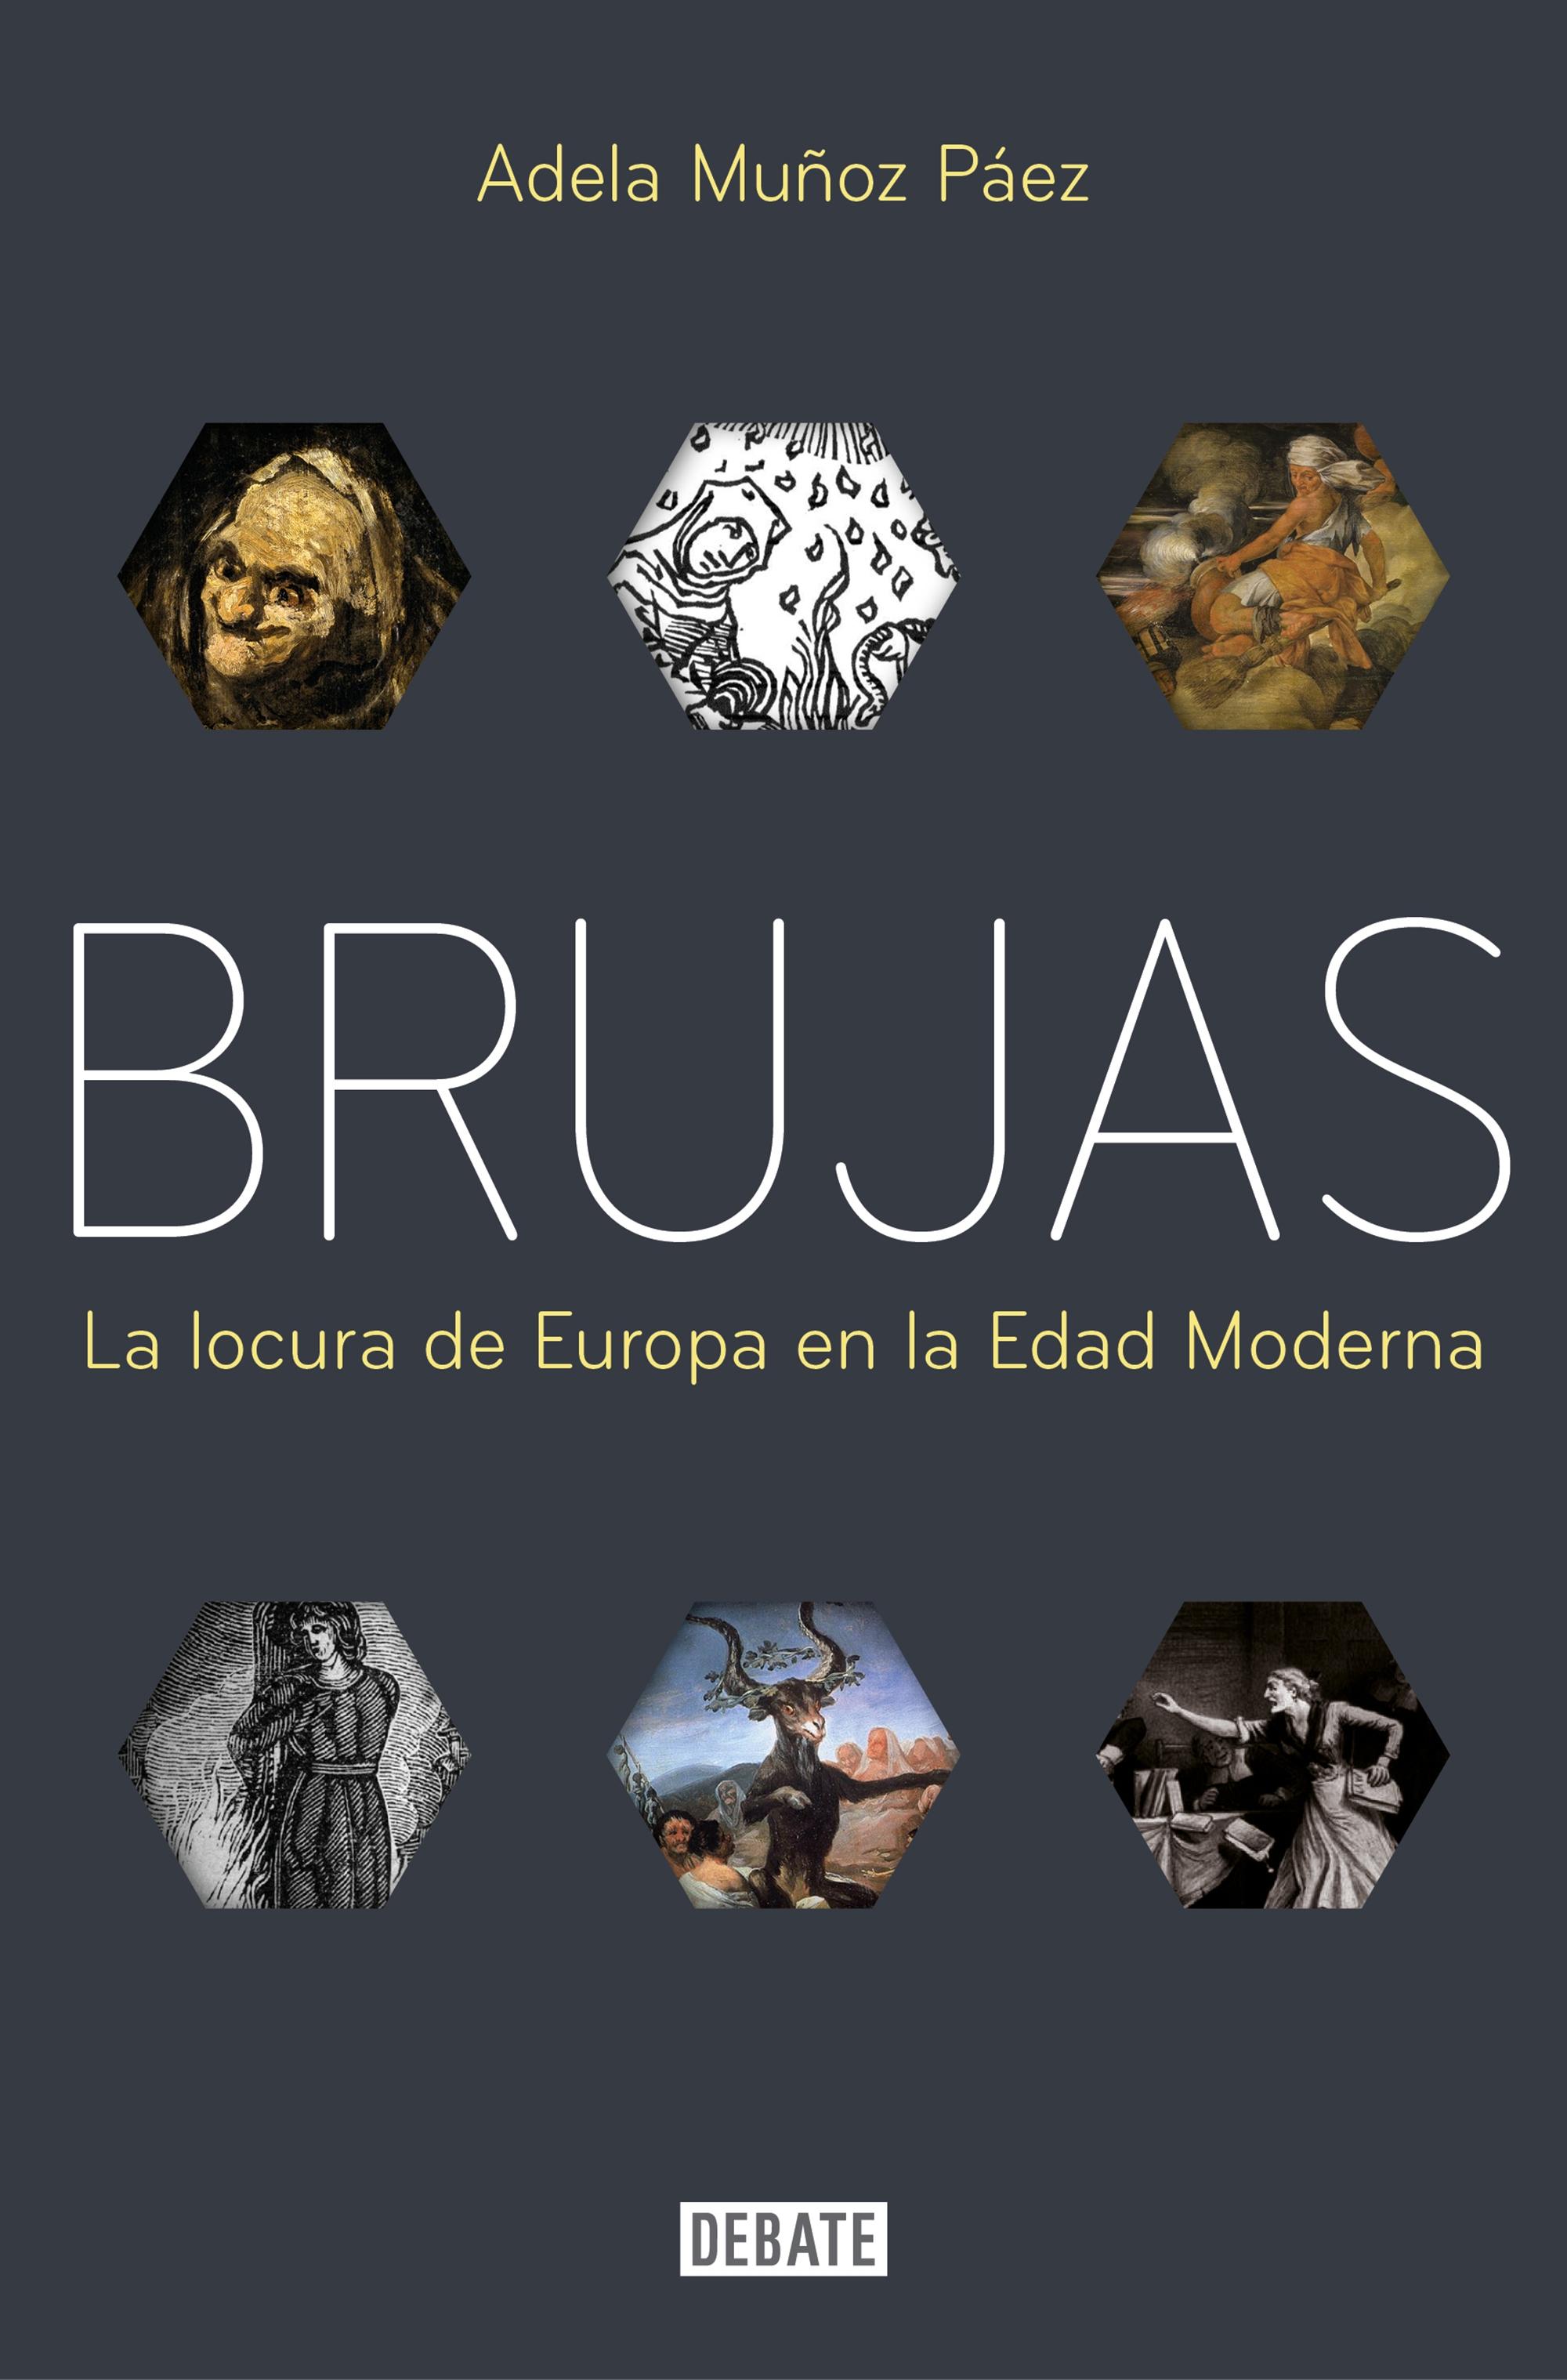 Brujas "La Locura de Europa en la Edad Moderna"